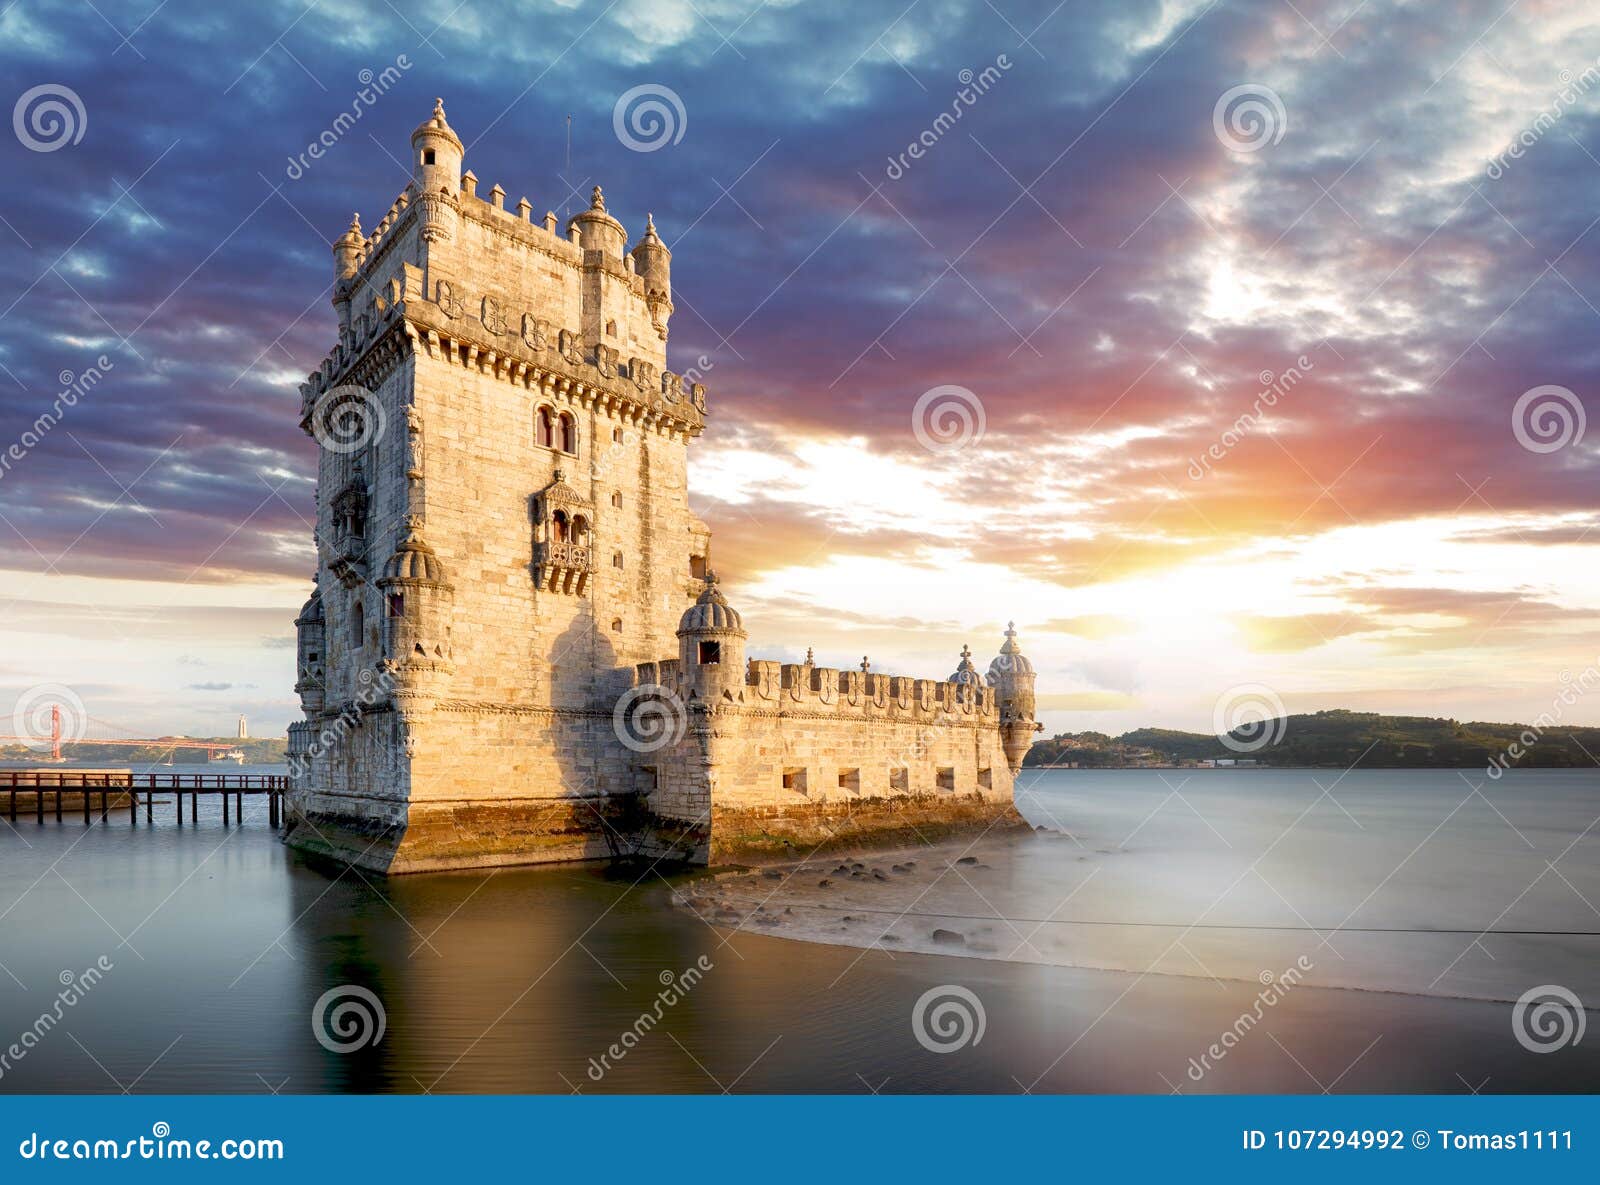 lisbon, belem tower at sunset, lisboa - portugal